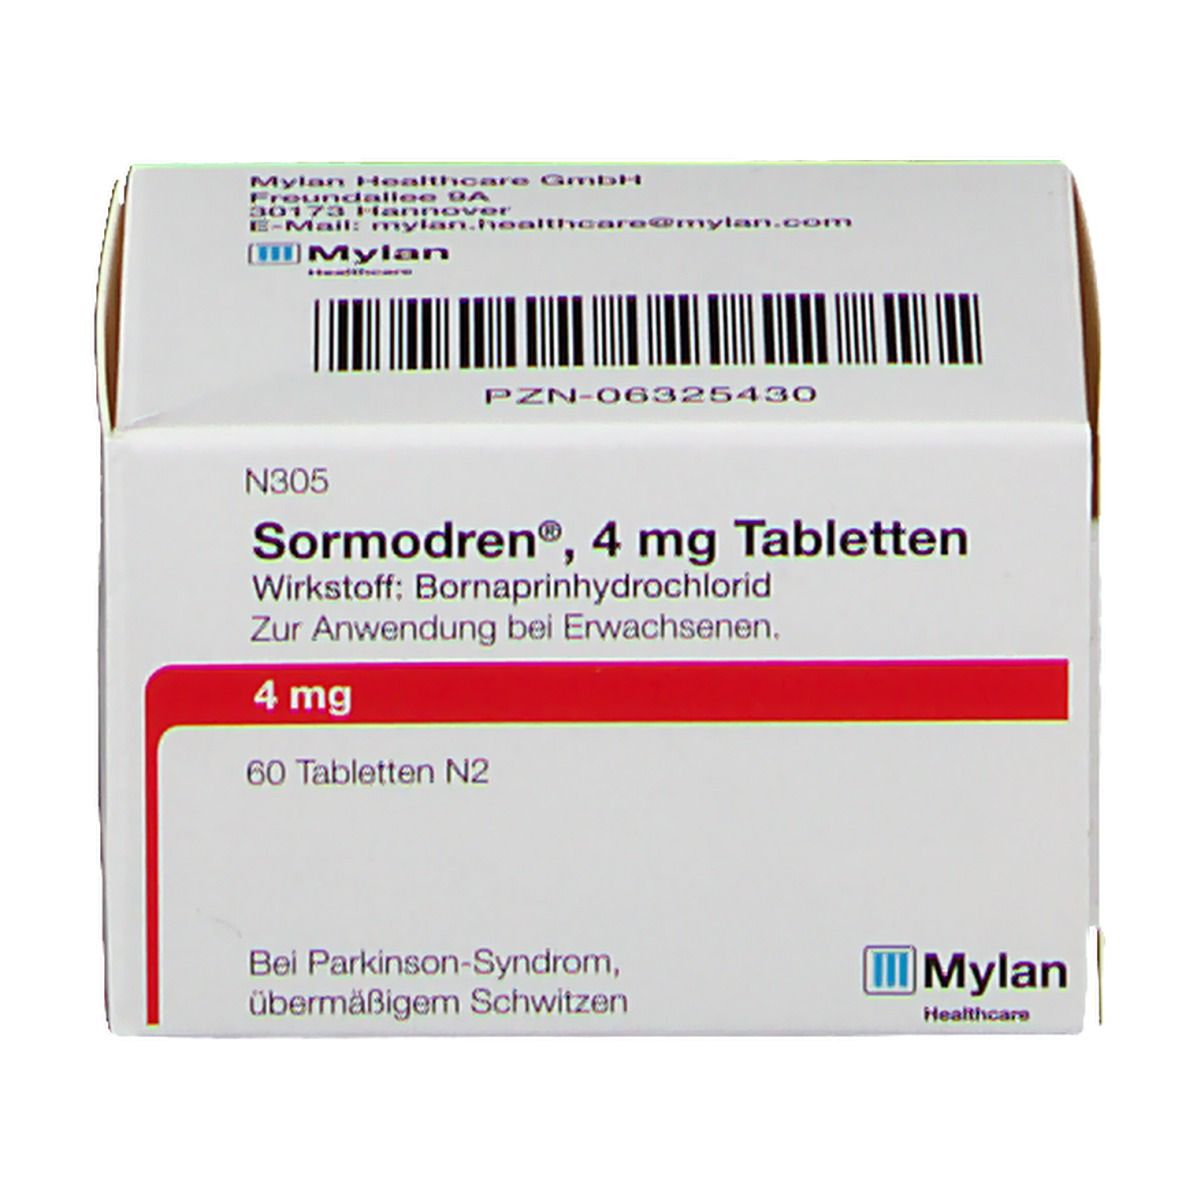 Sormodren® 4 mg